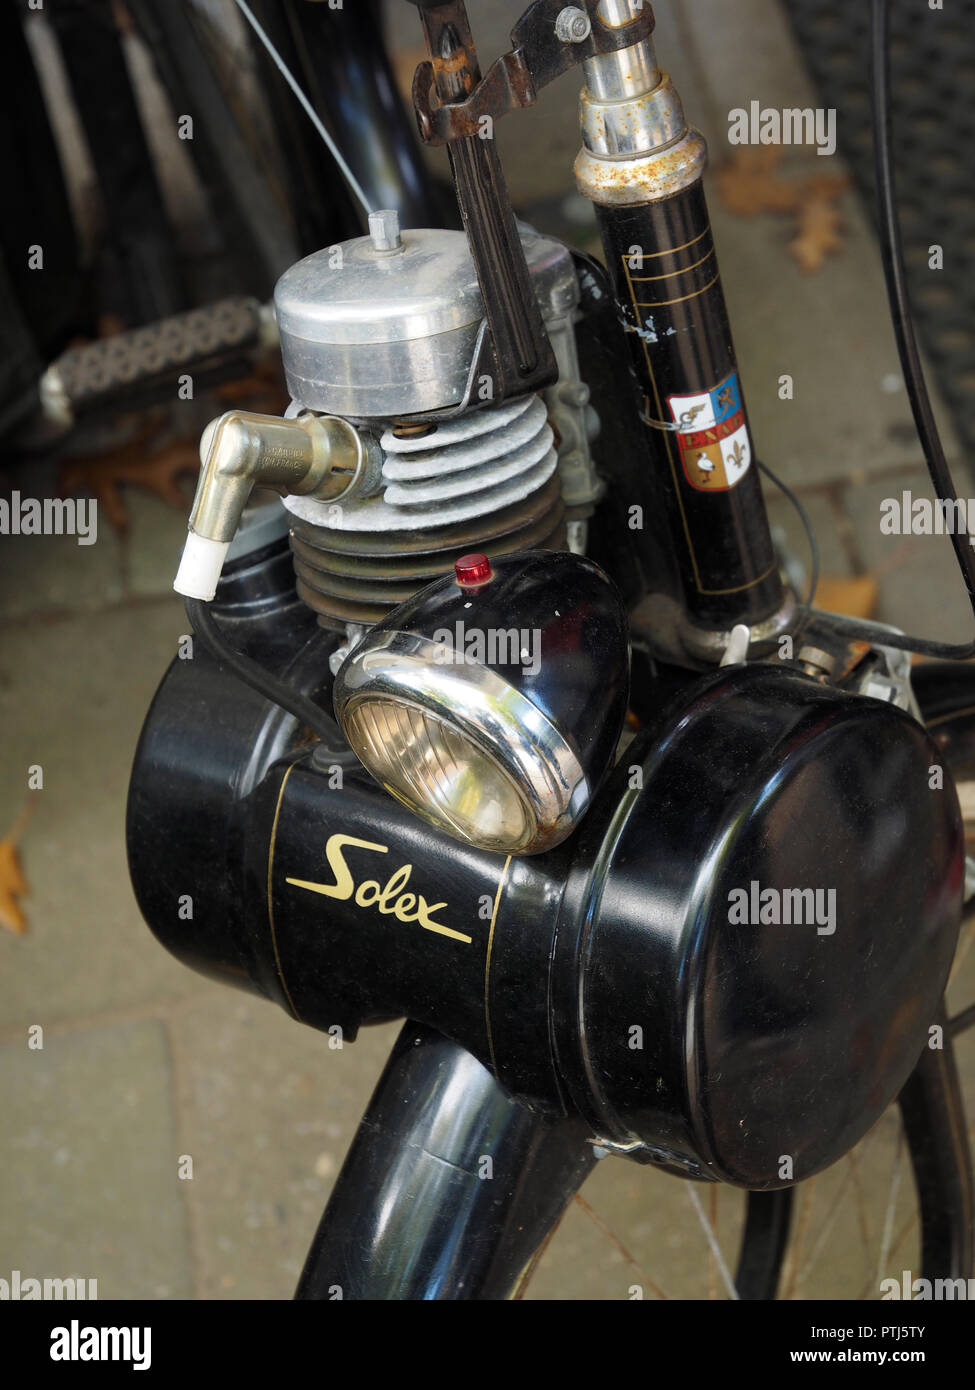 Nahaufnahme des klassischen Solex Mofa motorisiertes Fahrrad Motor oben auf  dem Vorderrad Stockfotografie - Alamy